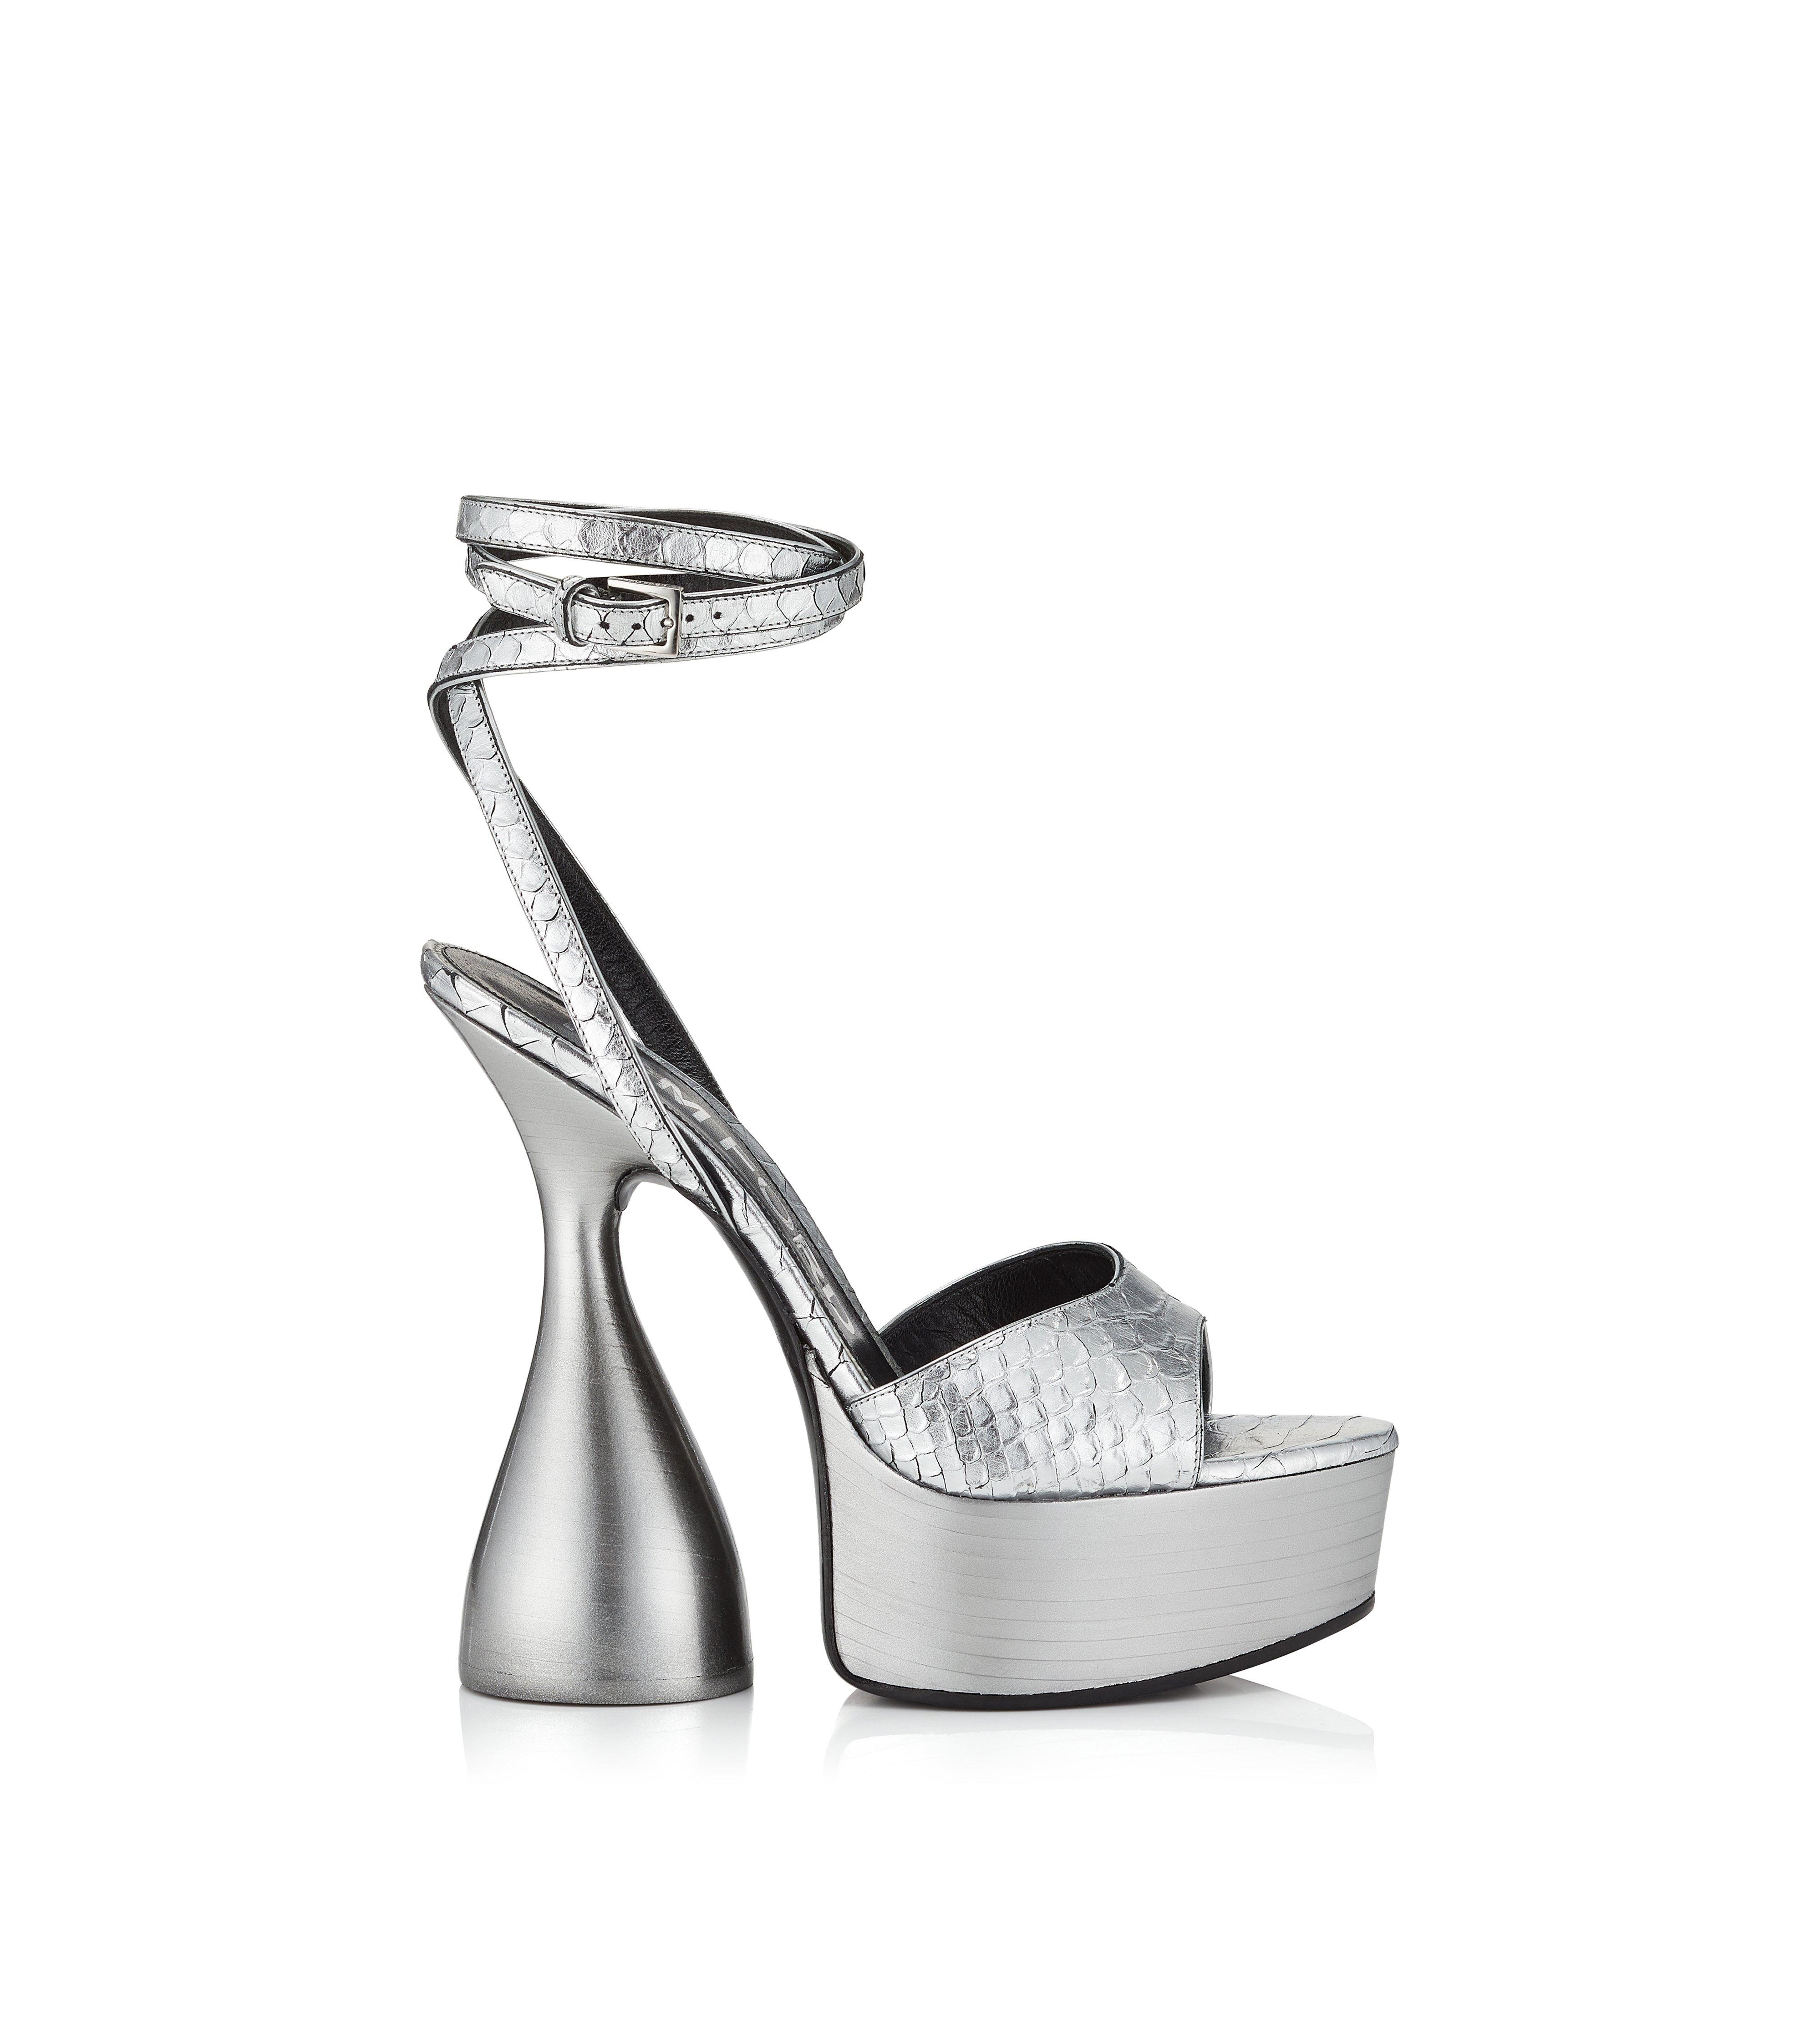 Top 36+ imagen silver tom ford platform heels